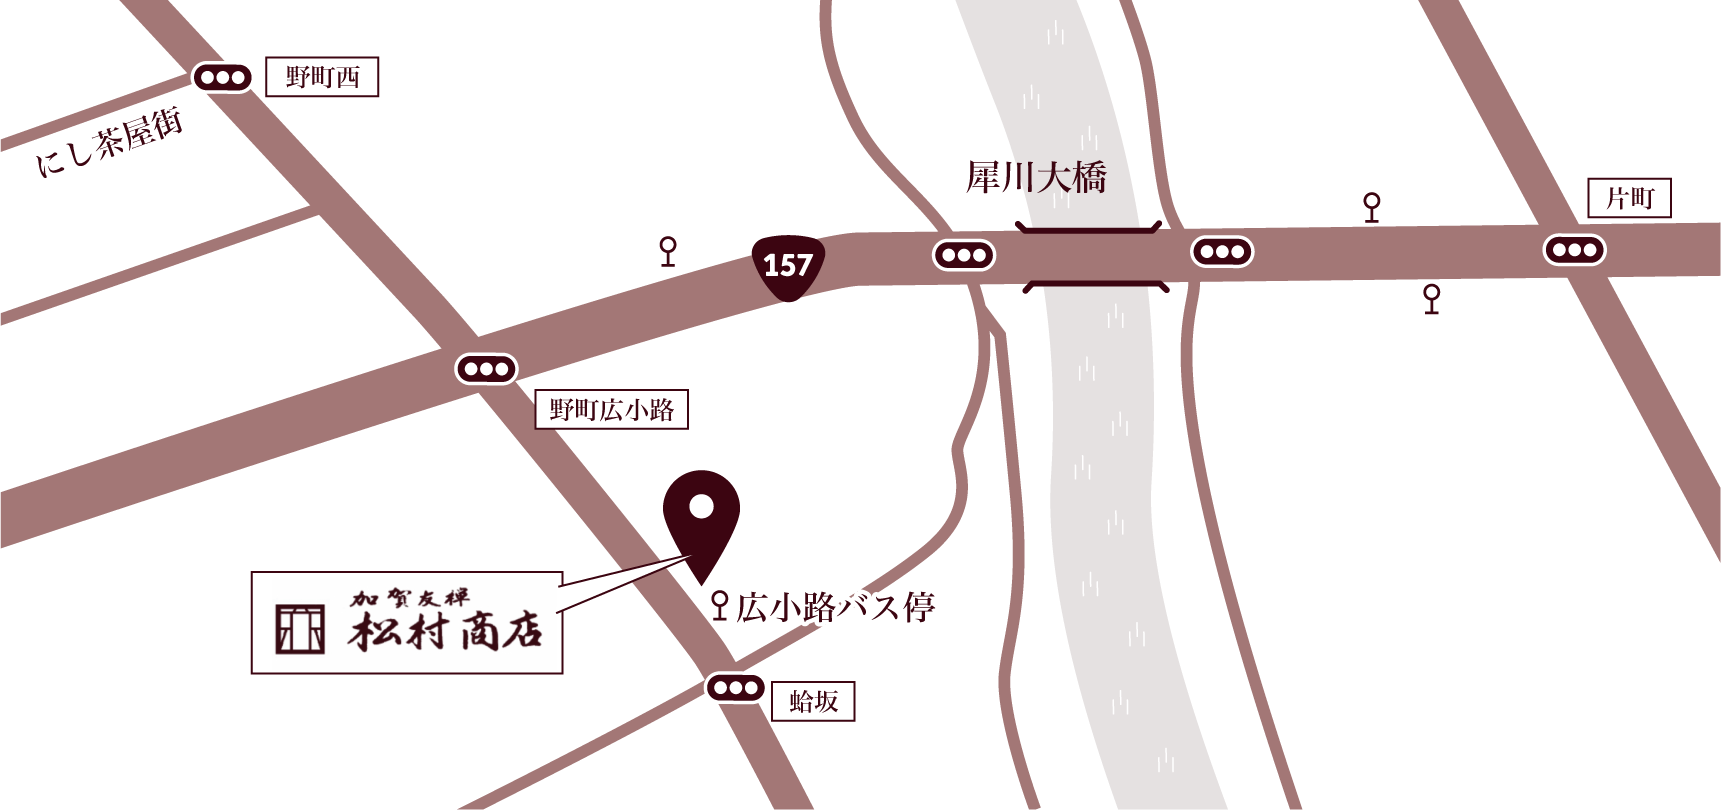 松村商店 地図